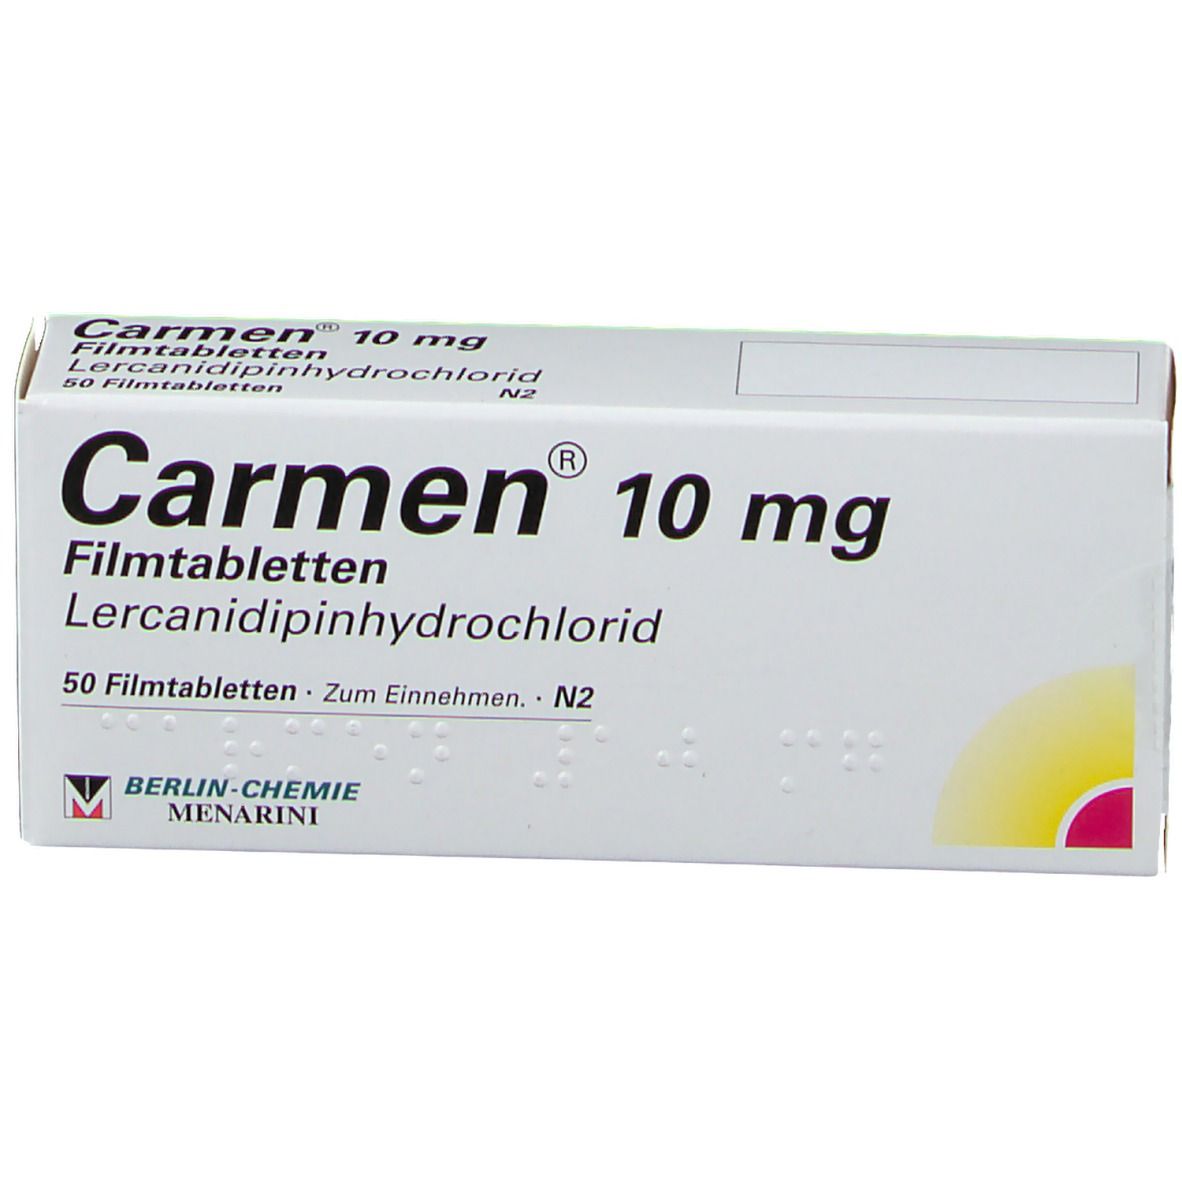 Carmen® 10 mg